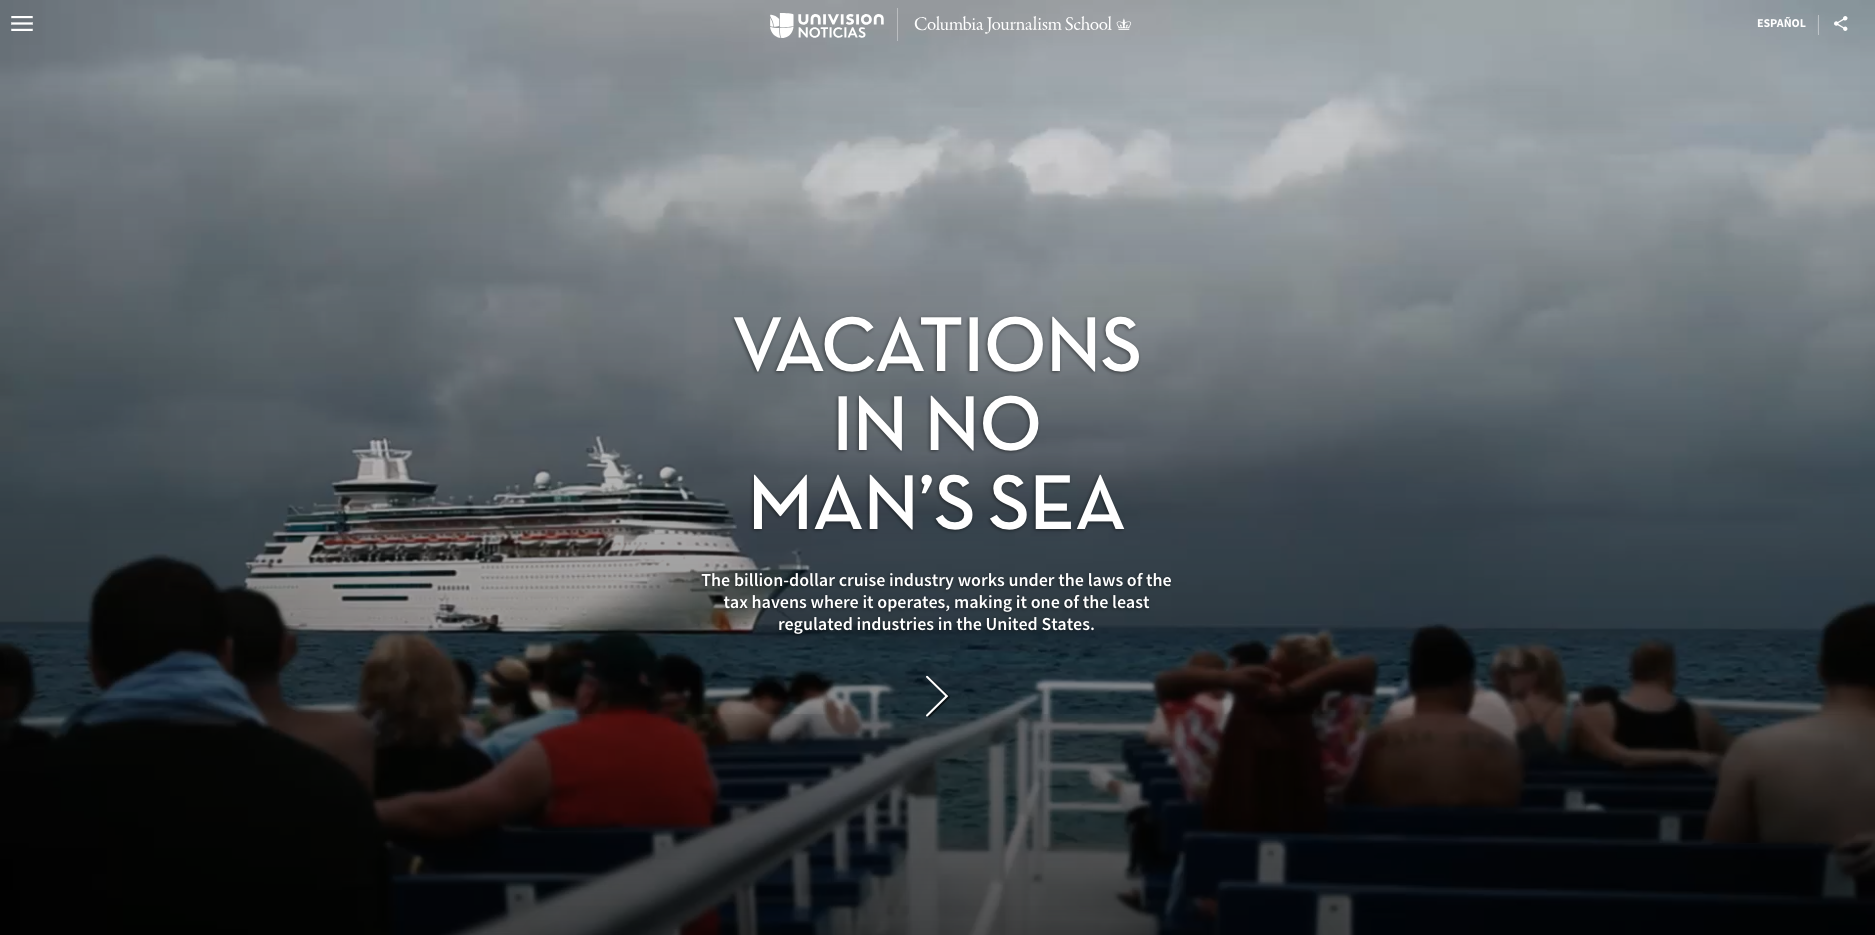 Vacation in no man's sea - 